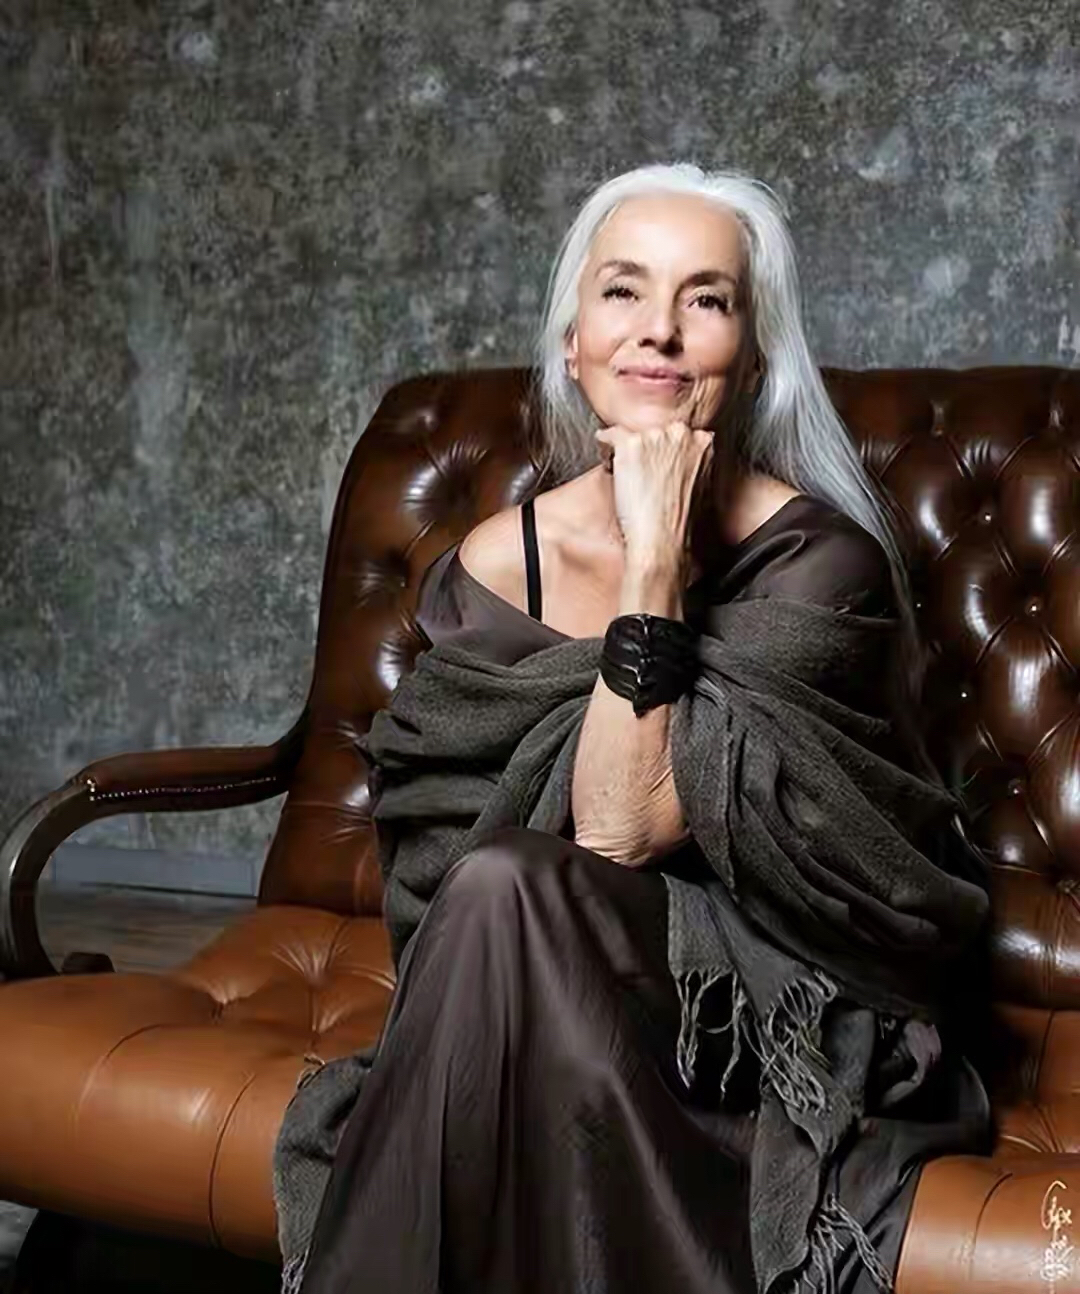 66岁奶奶当模特,天生白发,身材火辣又优雅